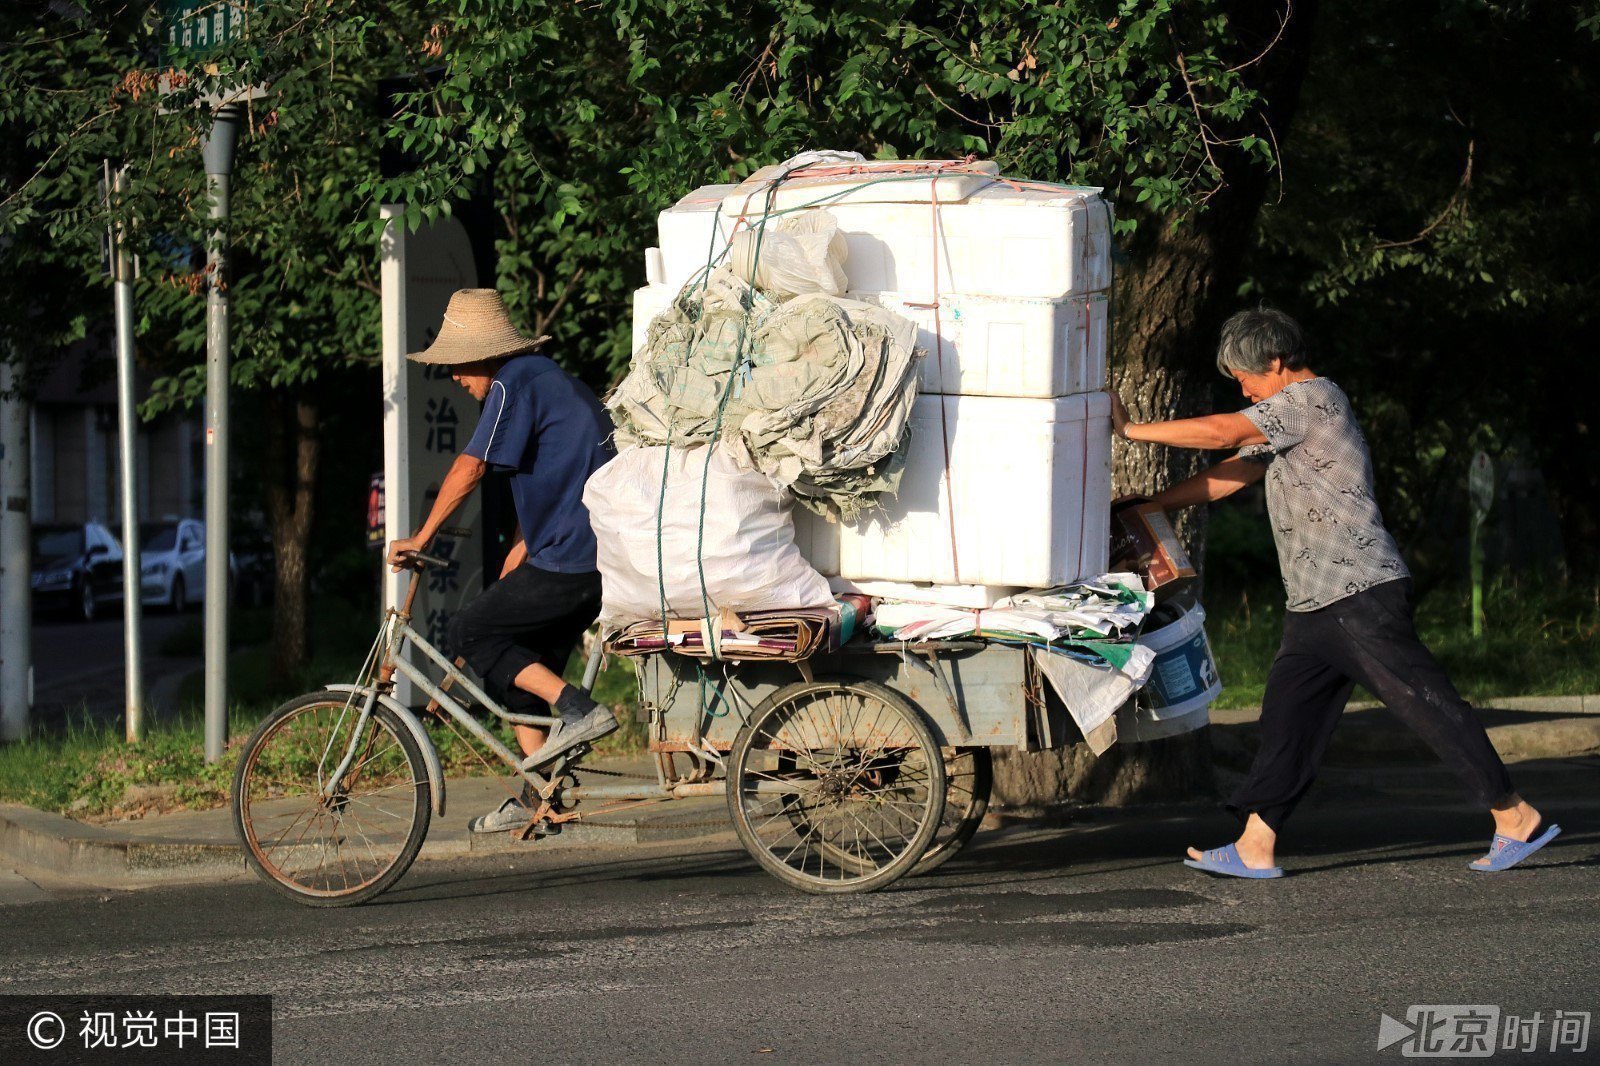 安徽芜湖,许友庆,张翠英老人骑着装有满满垃圾的三轮车前往废品收购站